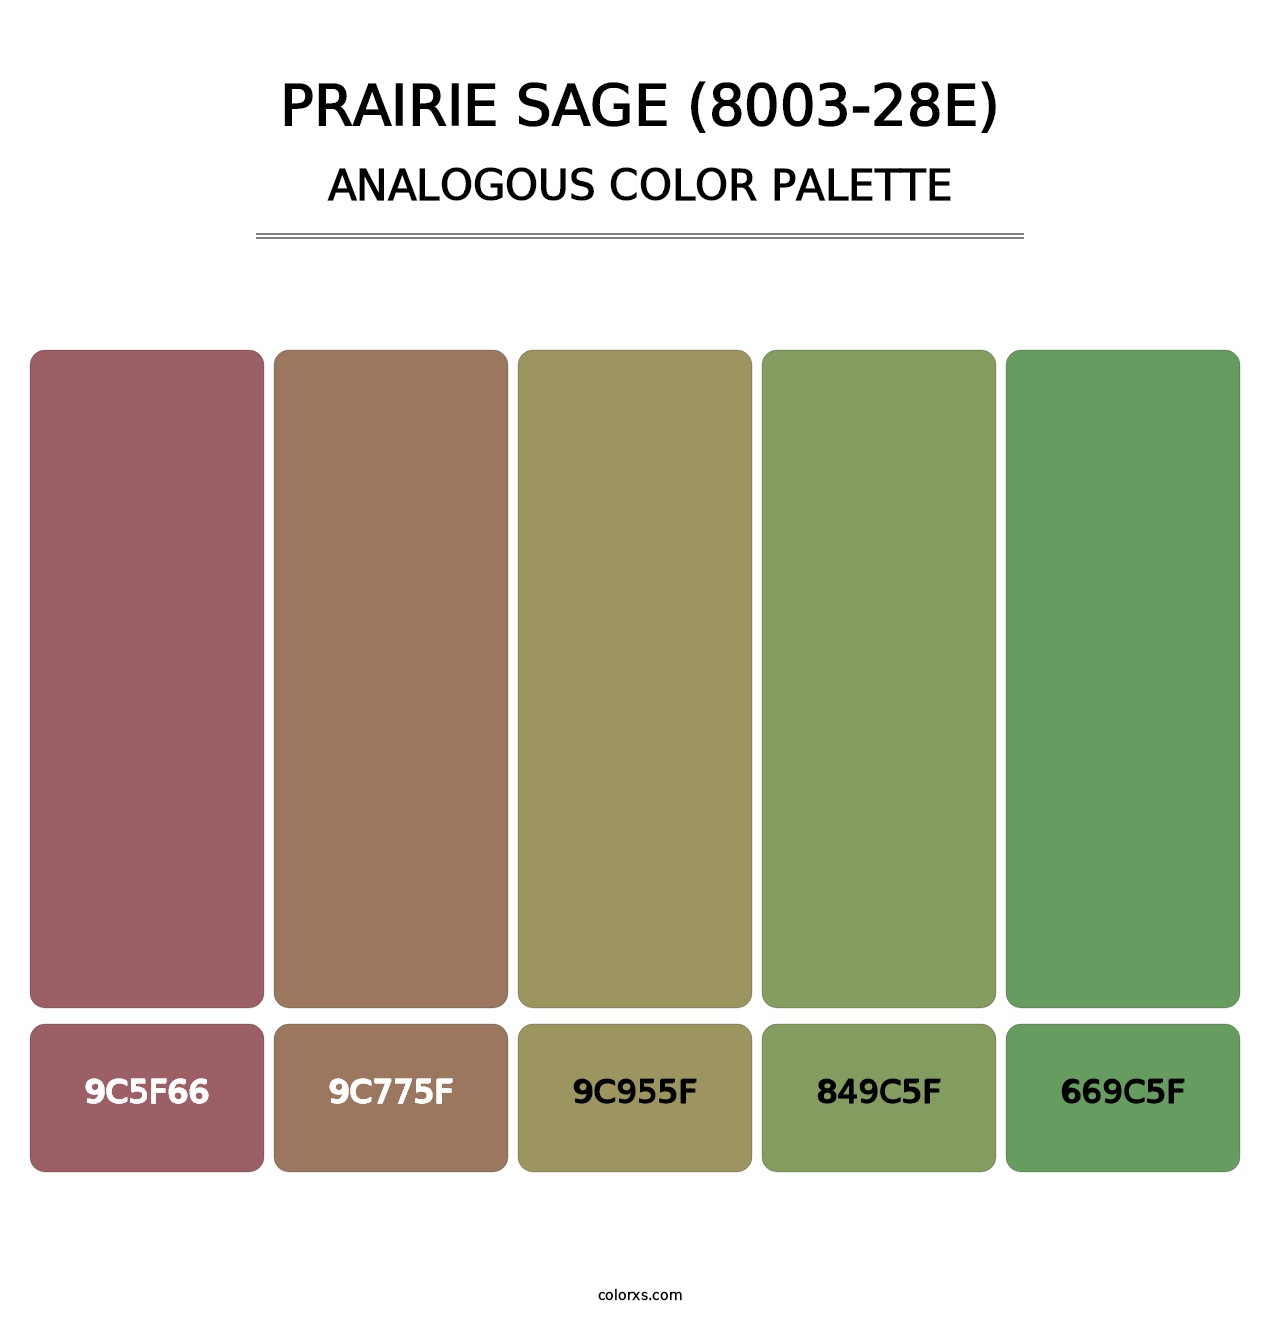 Prairie Sage (8003-28E) - Analogous Color Palette